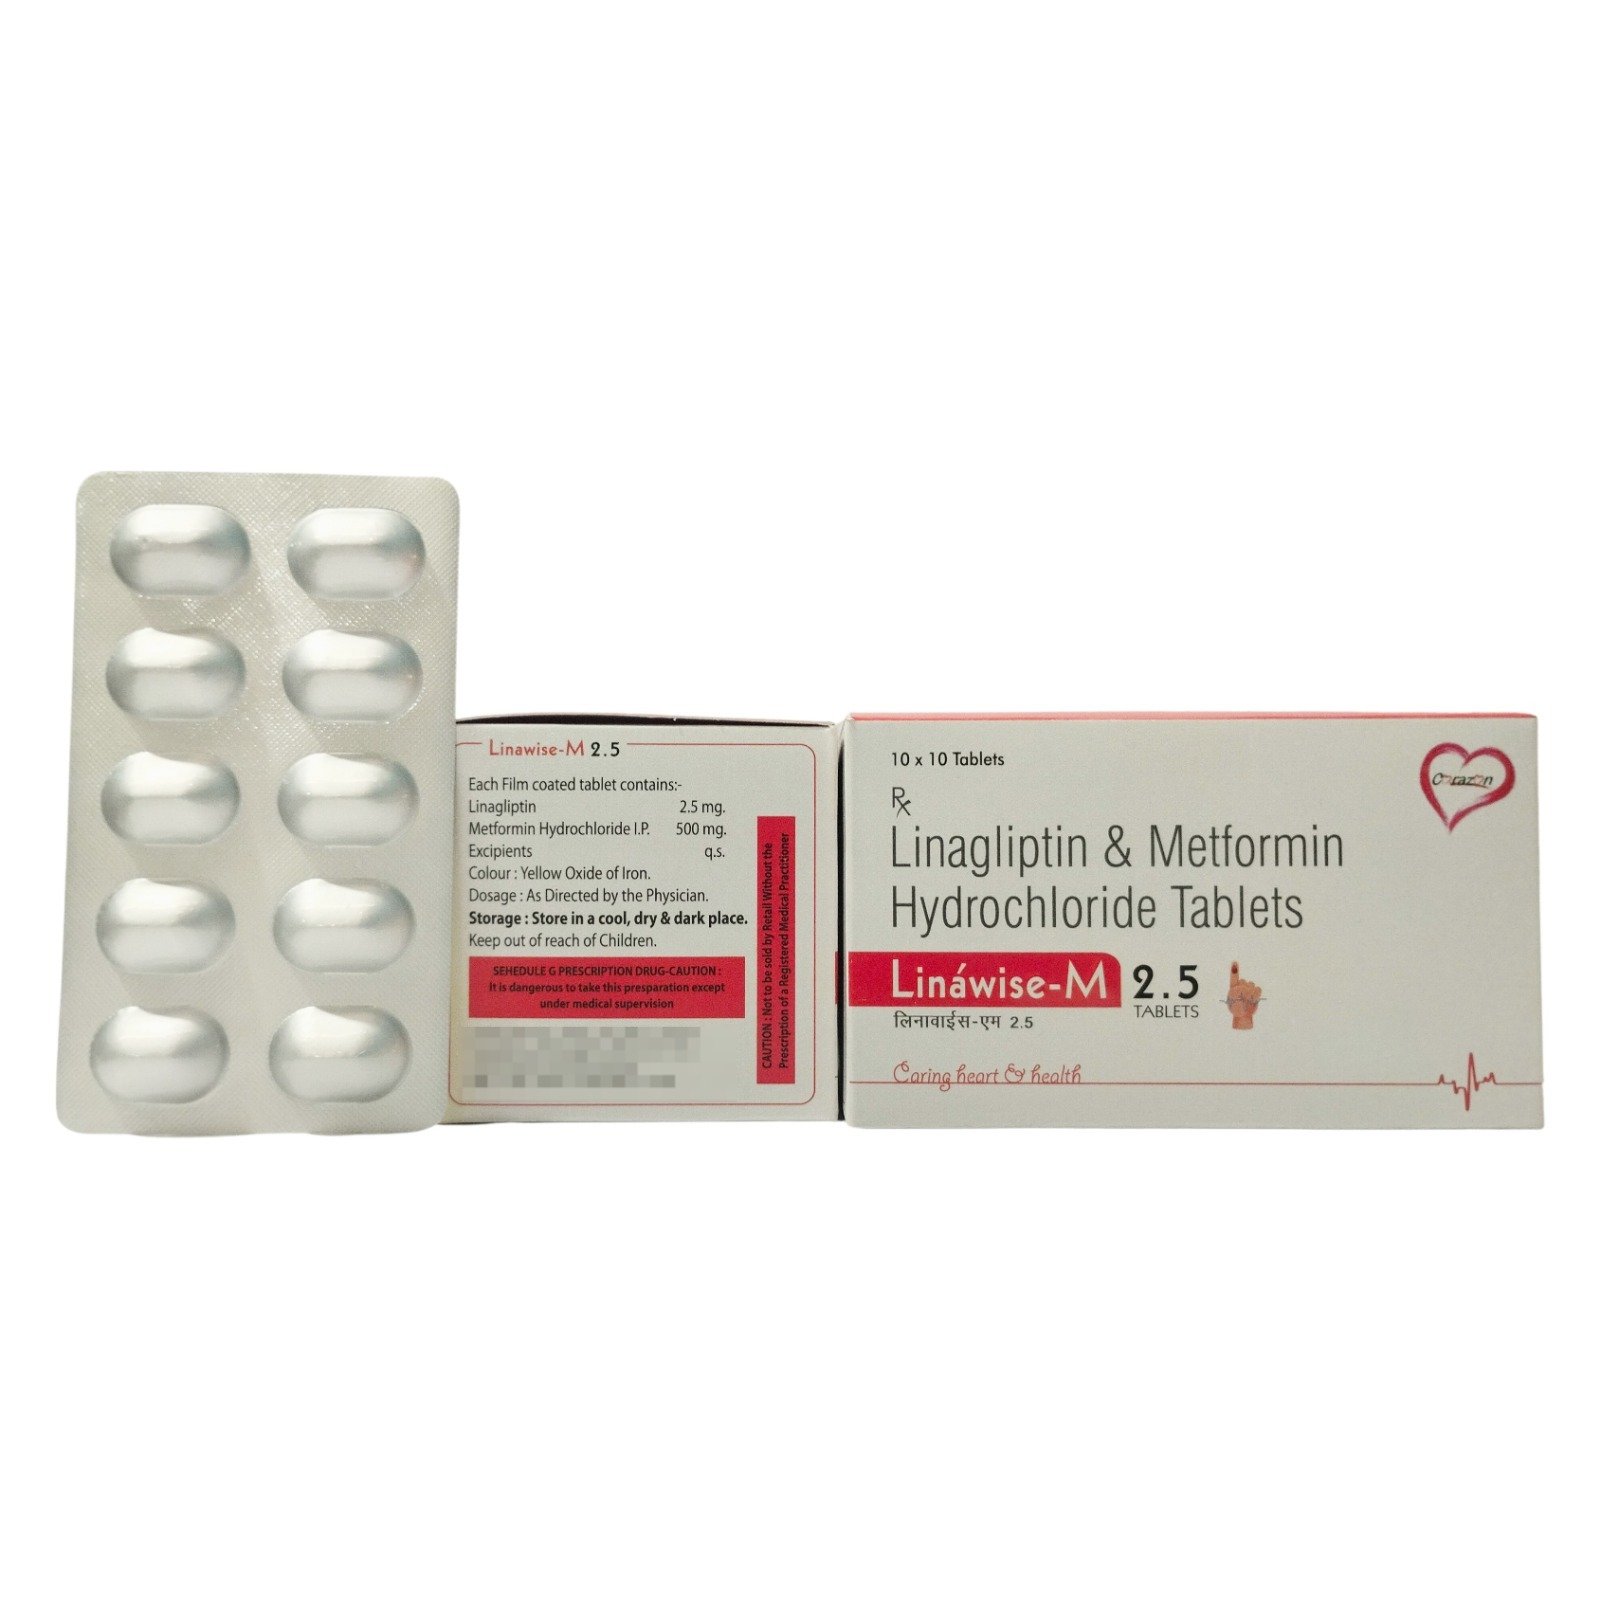 Linagliptin M-2.5 mg